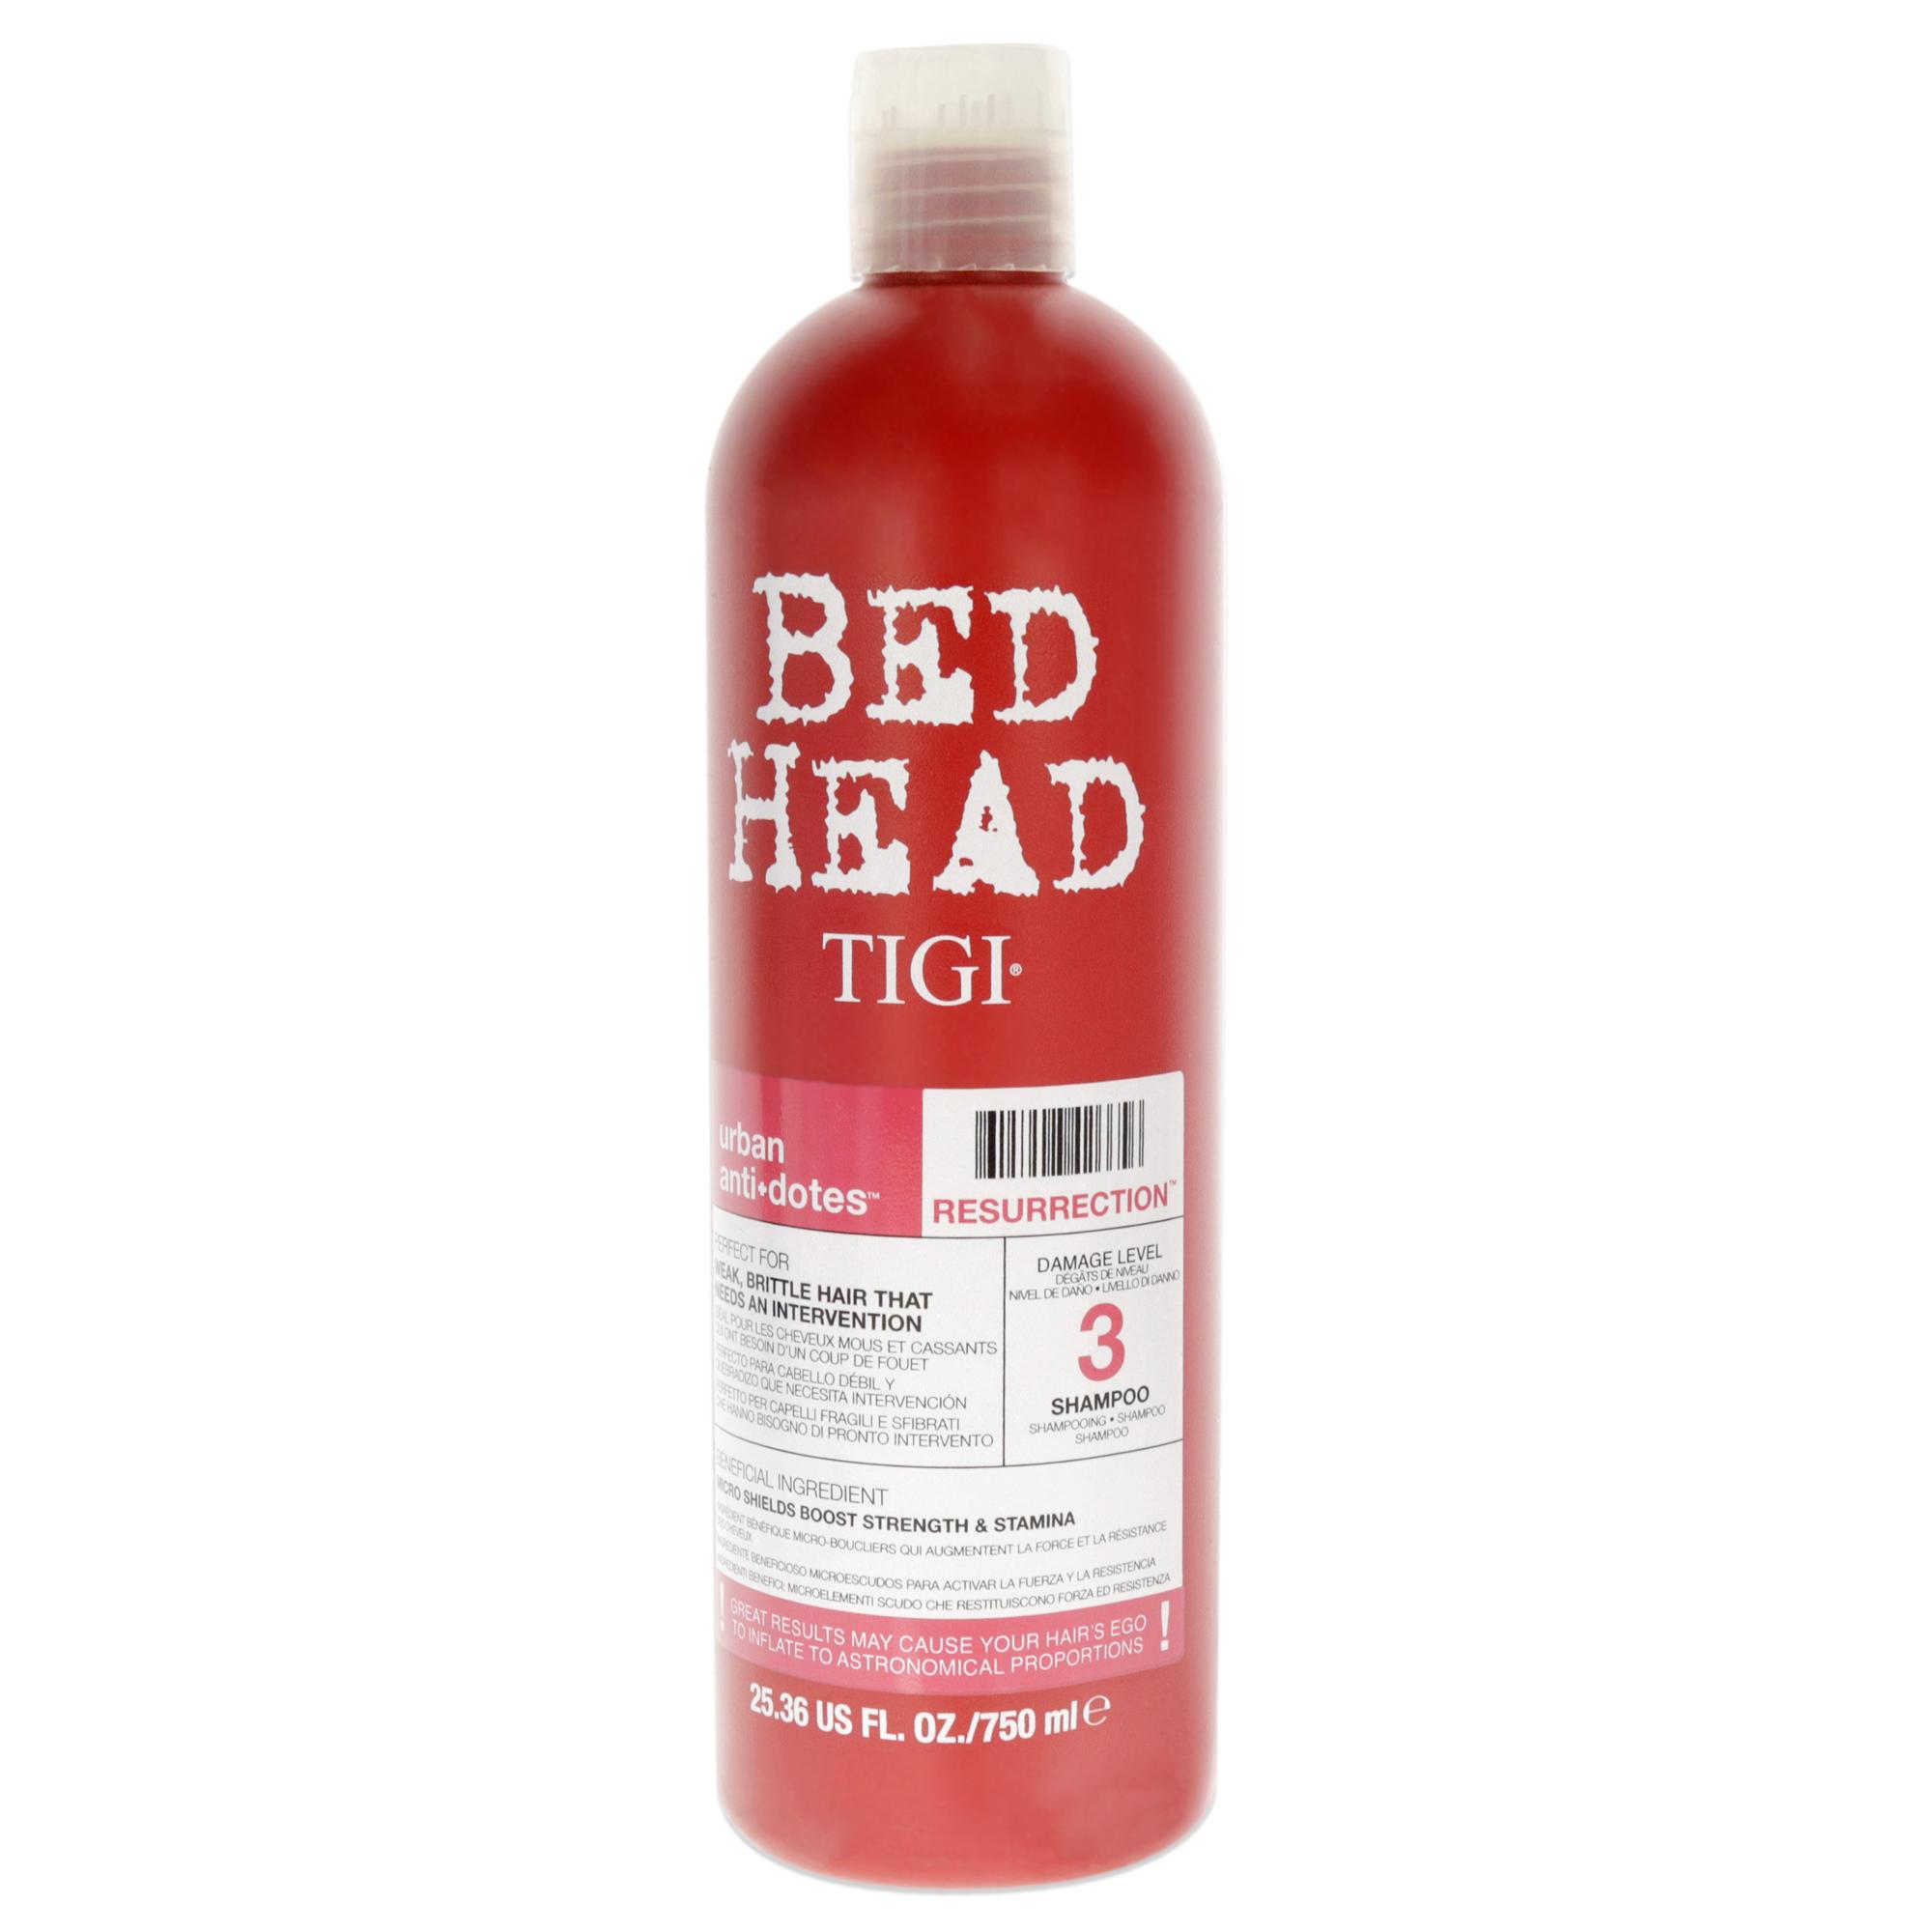 【正規品】【送料無料 】 TIGI Bed Head Urban Antidotes Resurrection Shampoo ティジー ベッドヘッド アーバン リサレクション シャンプー 750ml 【海外直送】